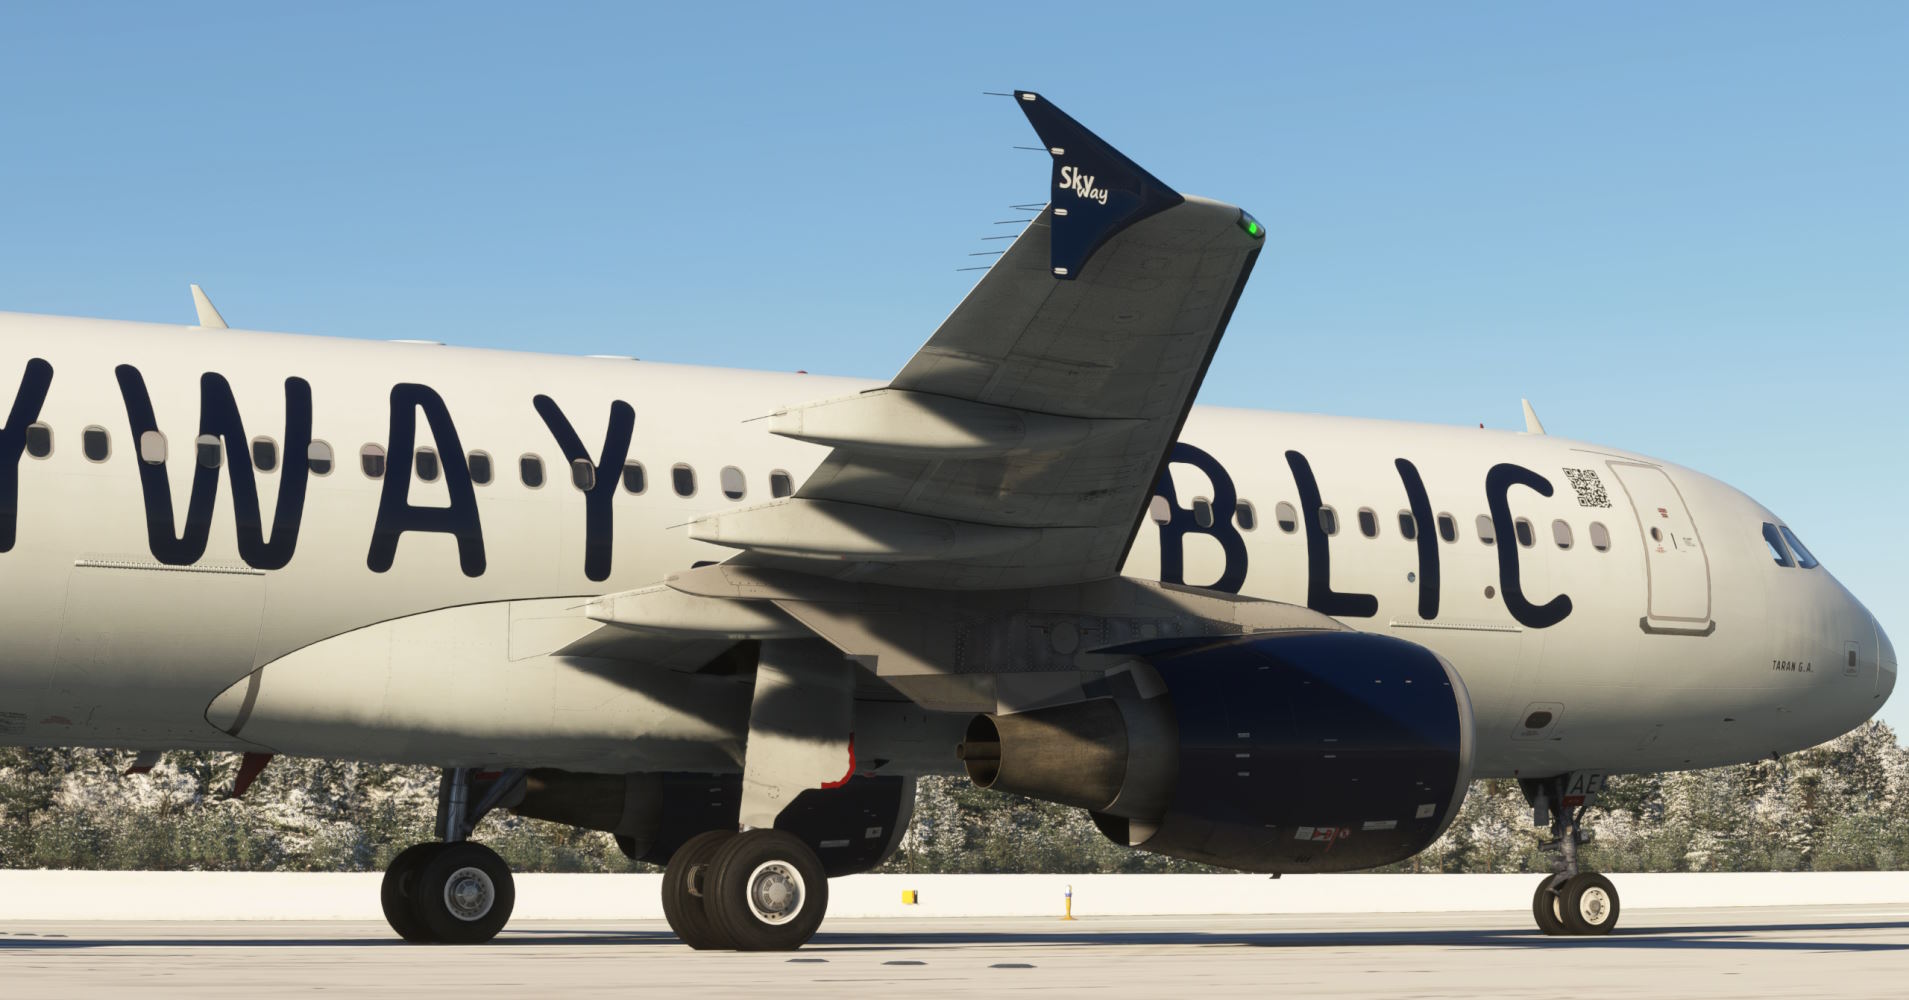 FENIX A320 "SKYWAY_PUBLIC" LIVERY MSFS